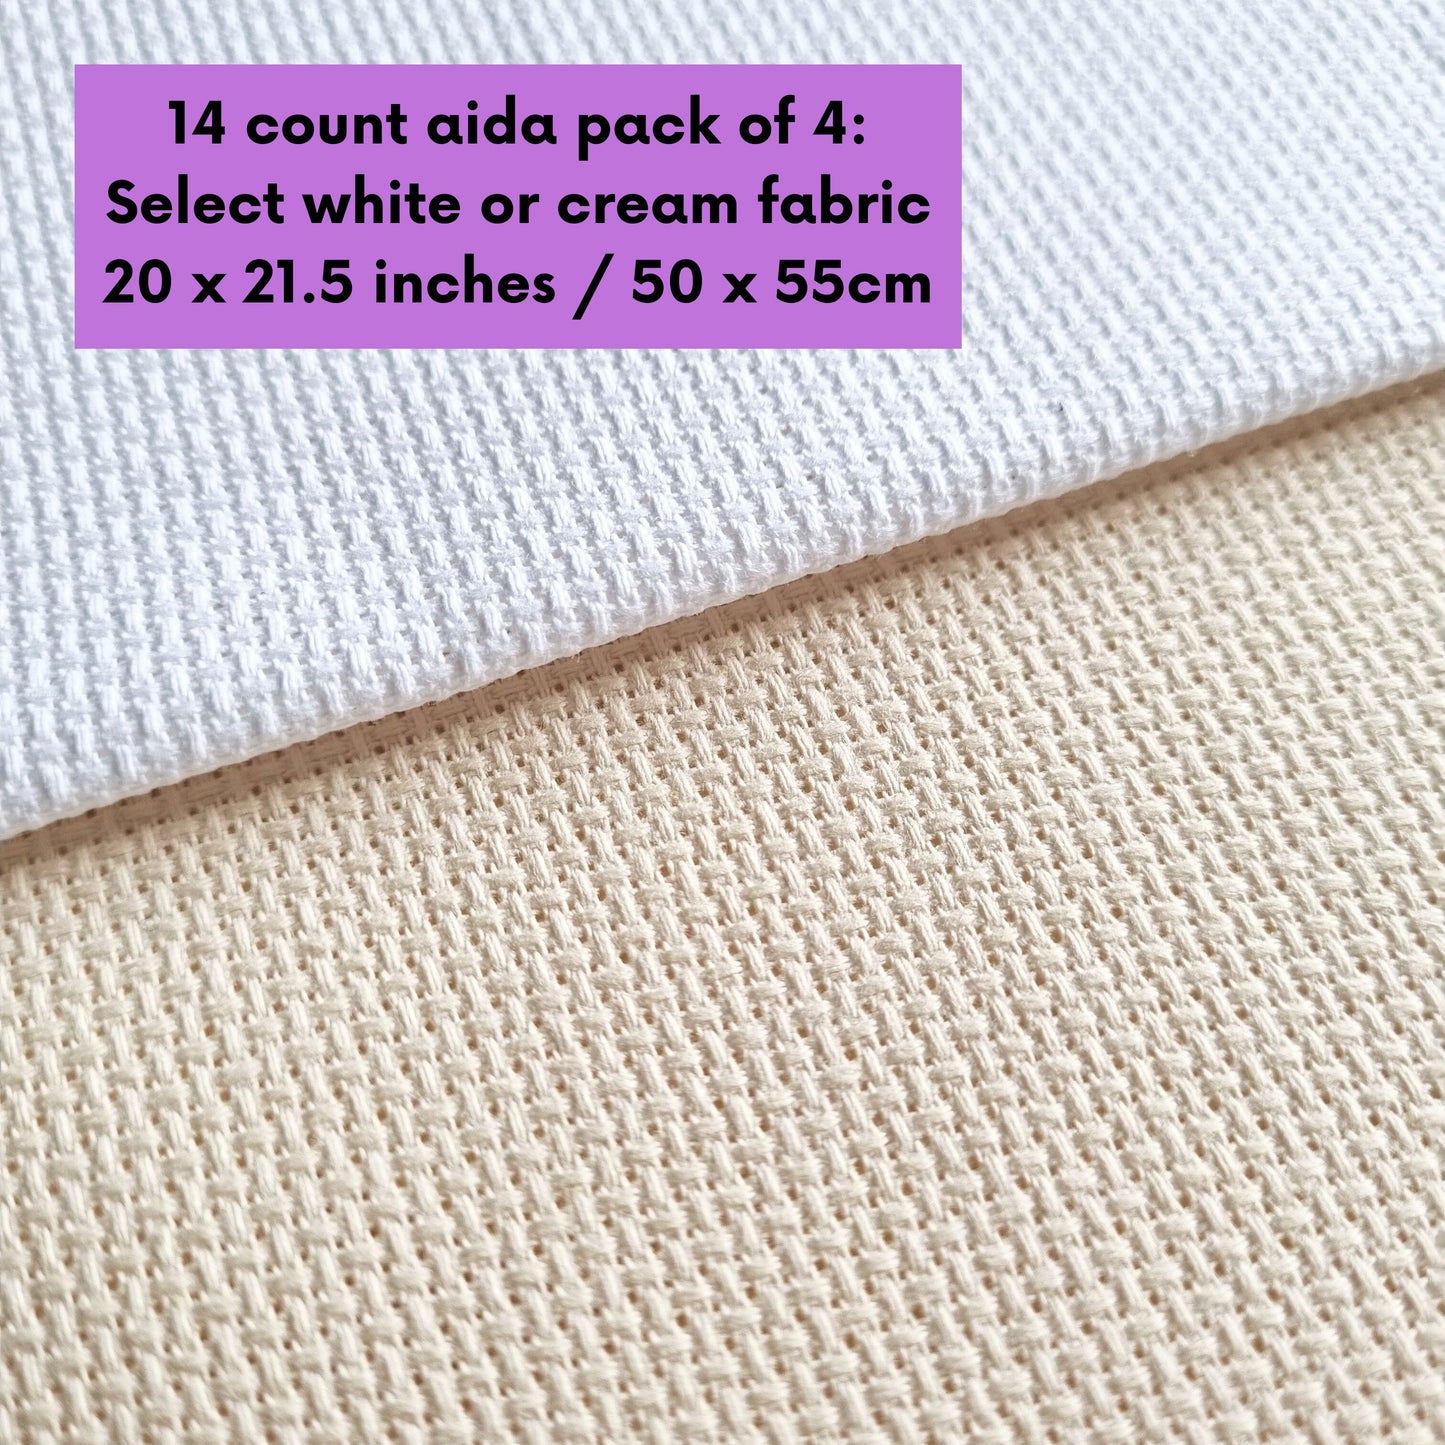 4 Pieces of 14 Count White or Cream Aida Fabric 20 x 21.5 Inches / 50cm x 55cm